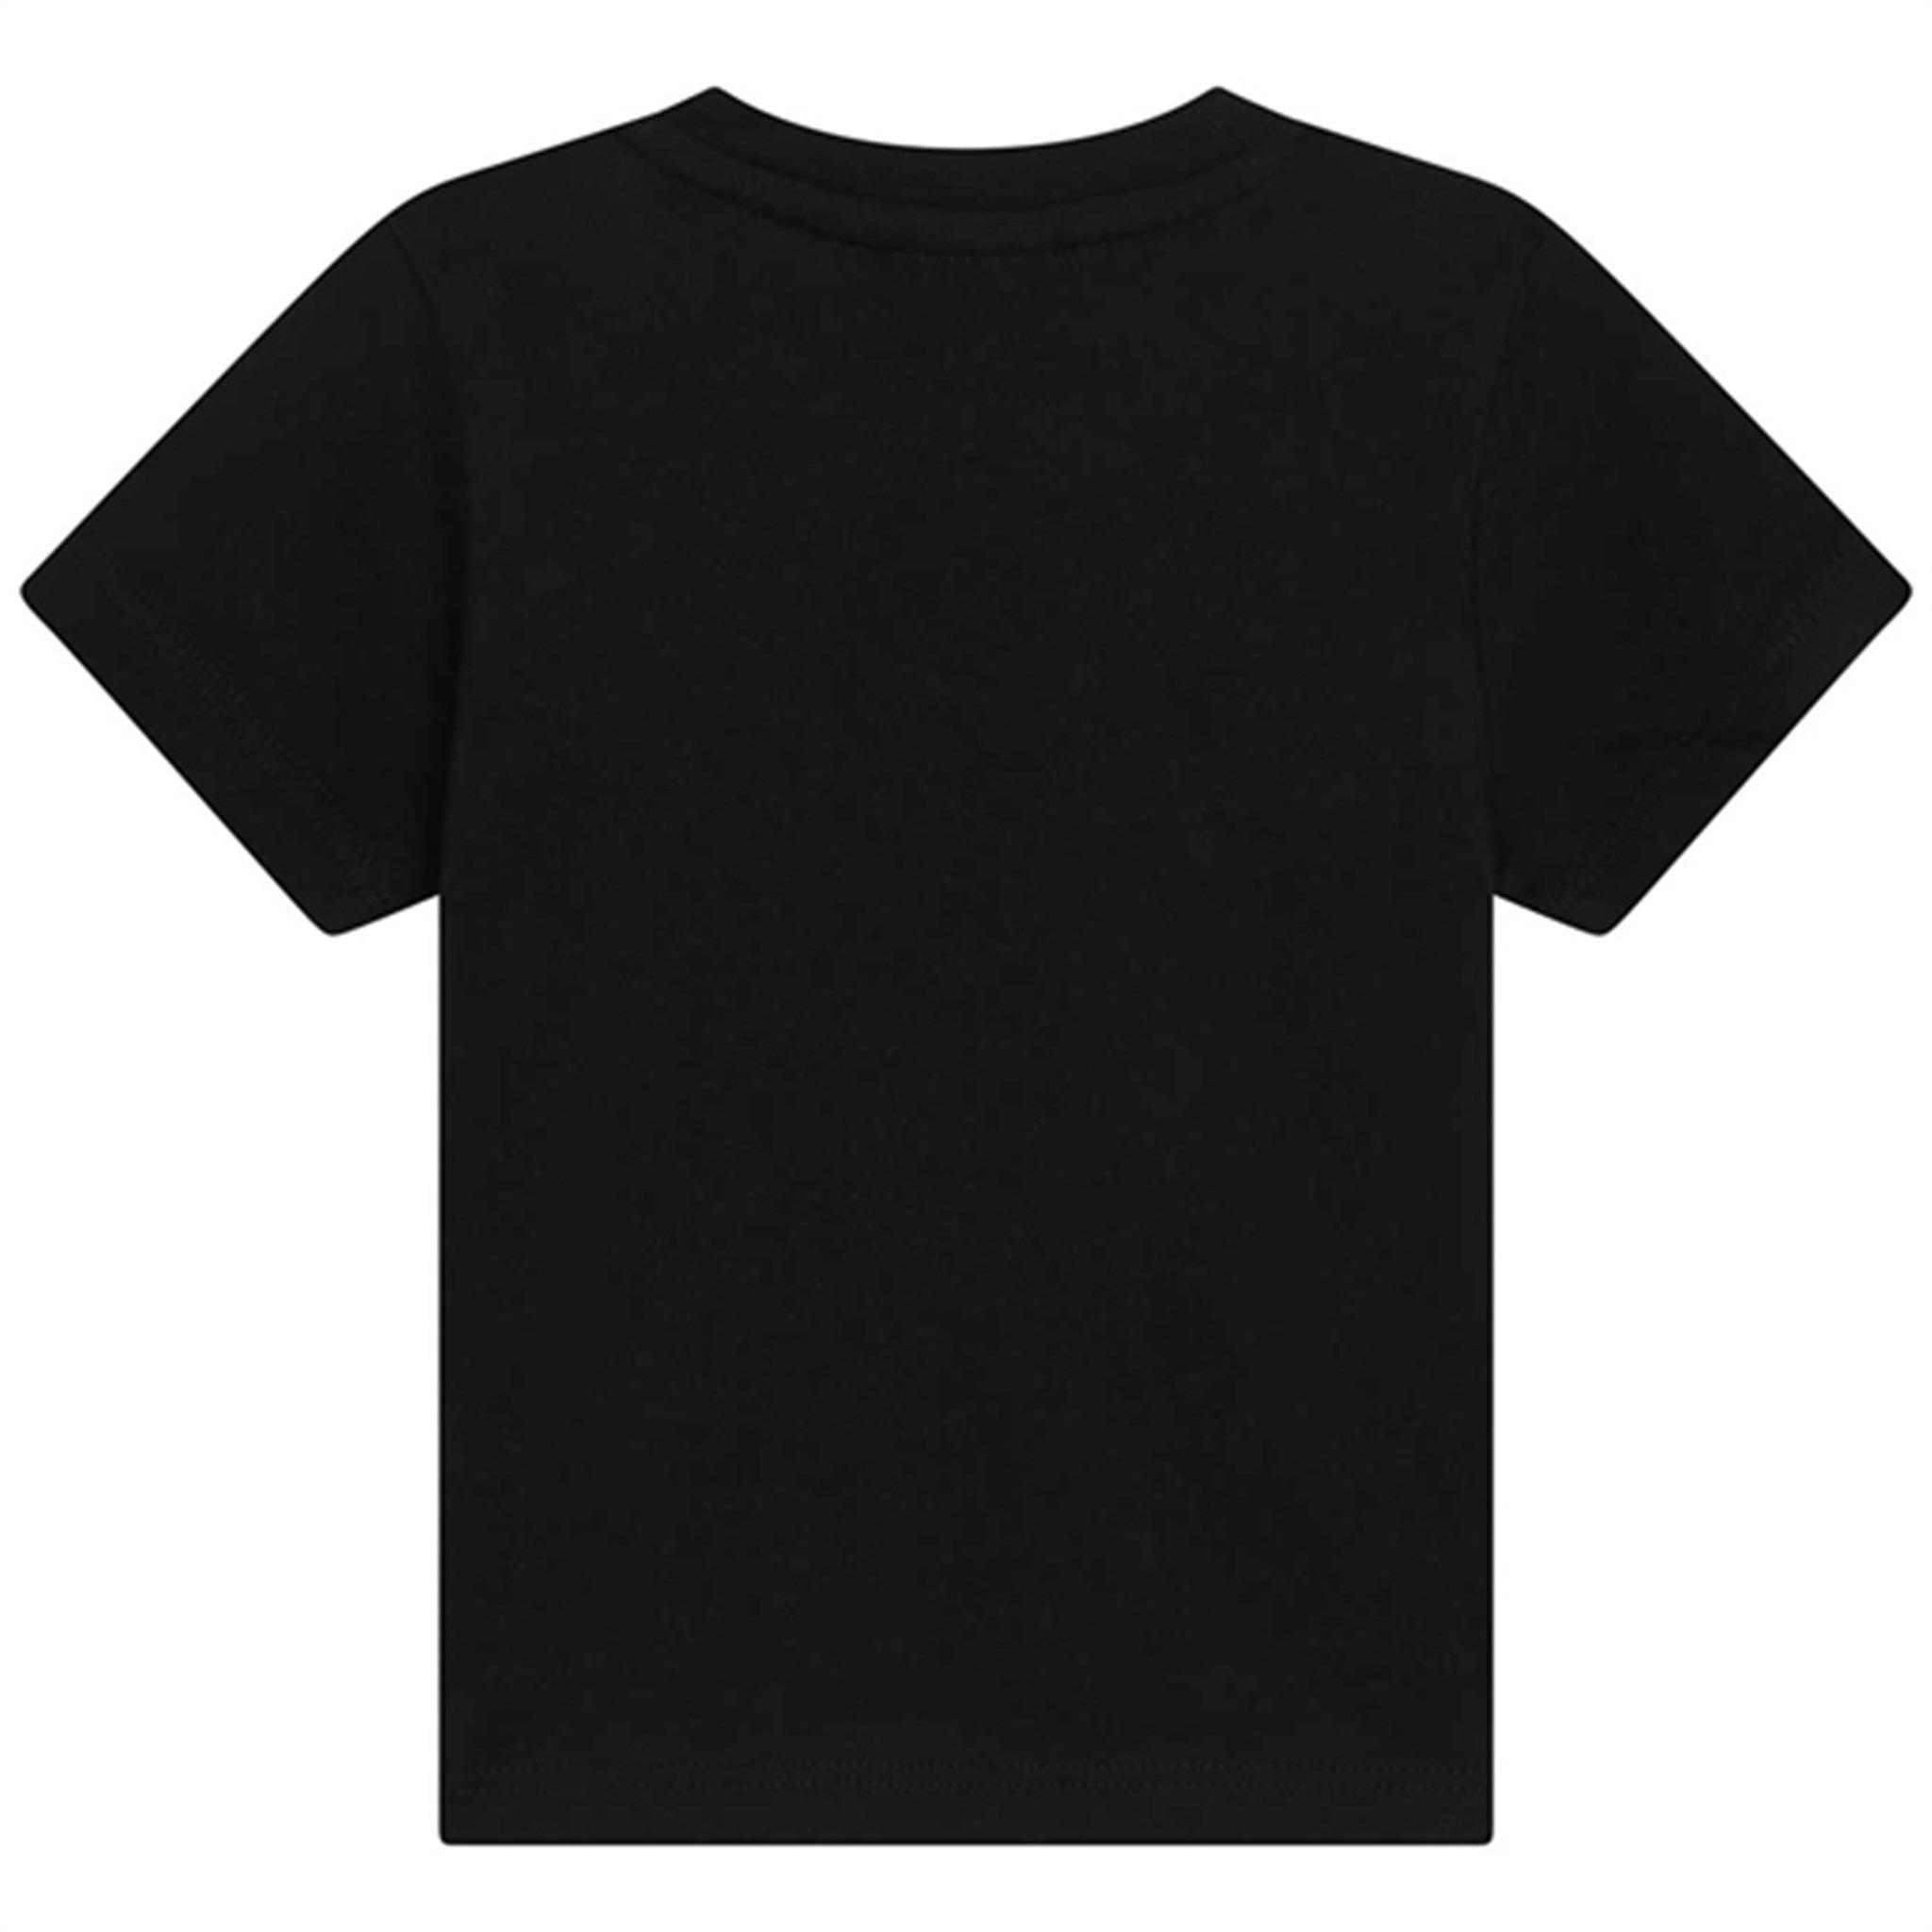 Hugo Boss T-shirt Black 2